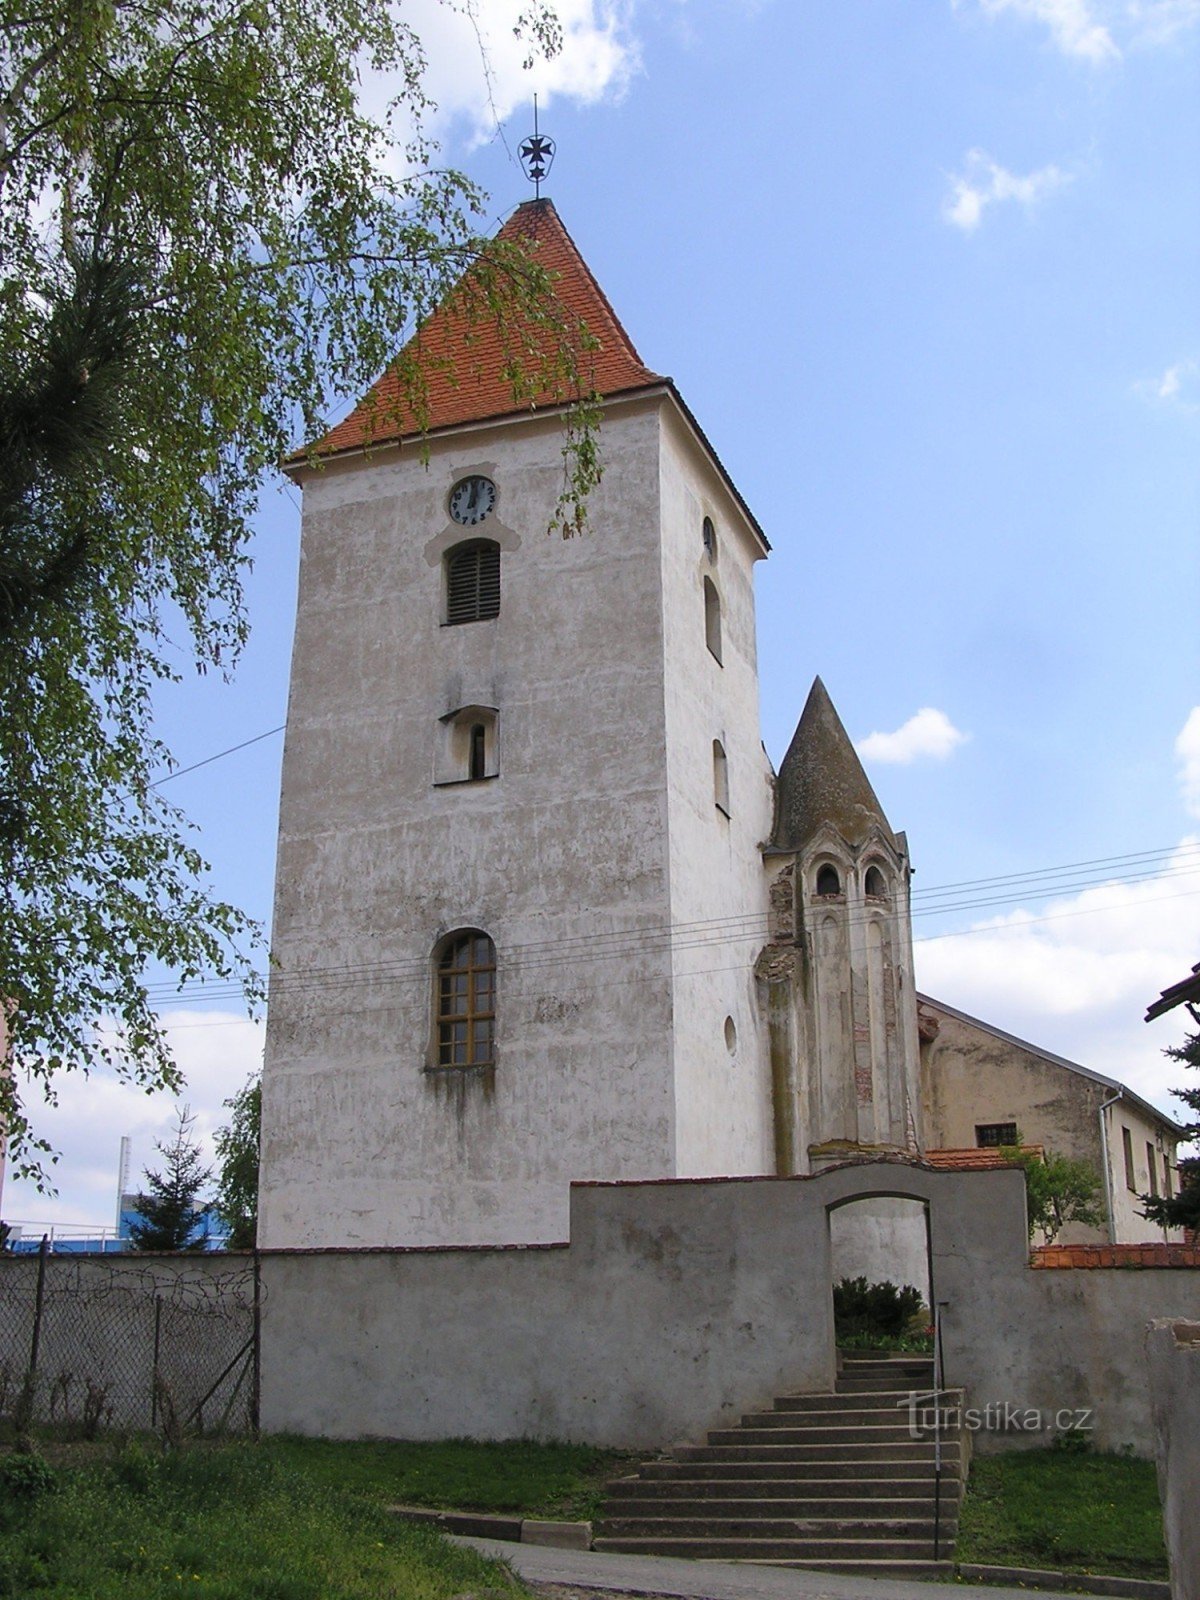 Церковь Св. Иакова Старшего в Годонице - 21.4.2005